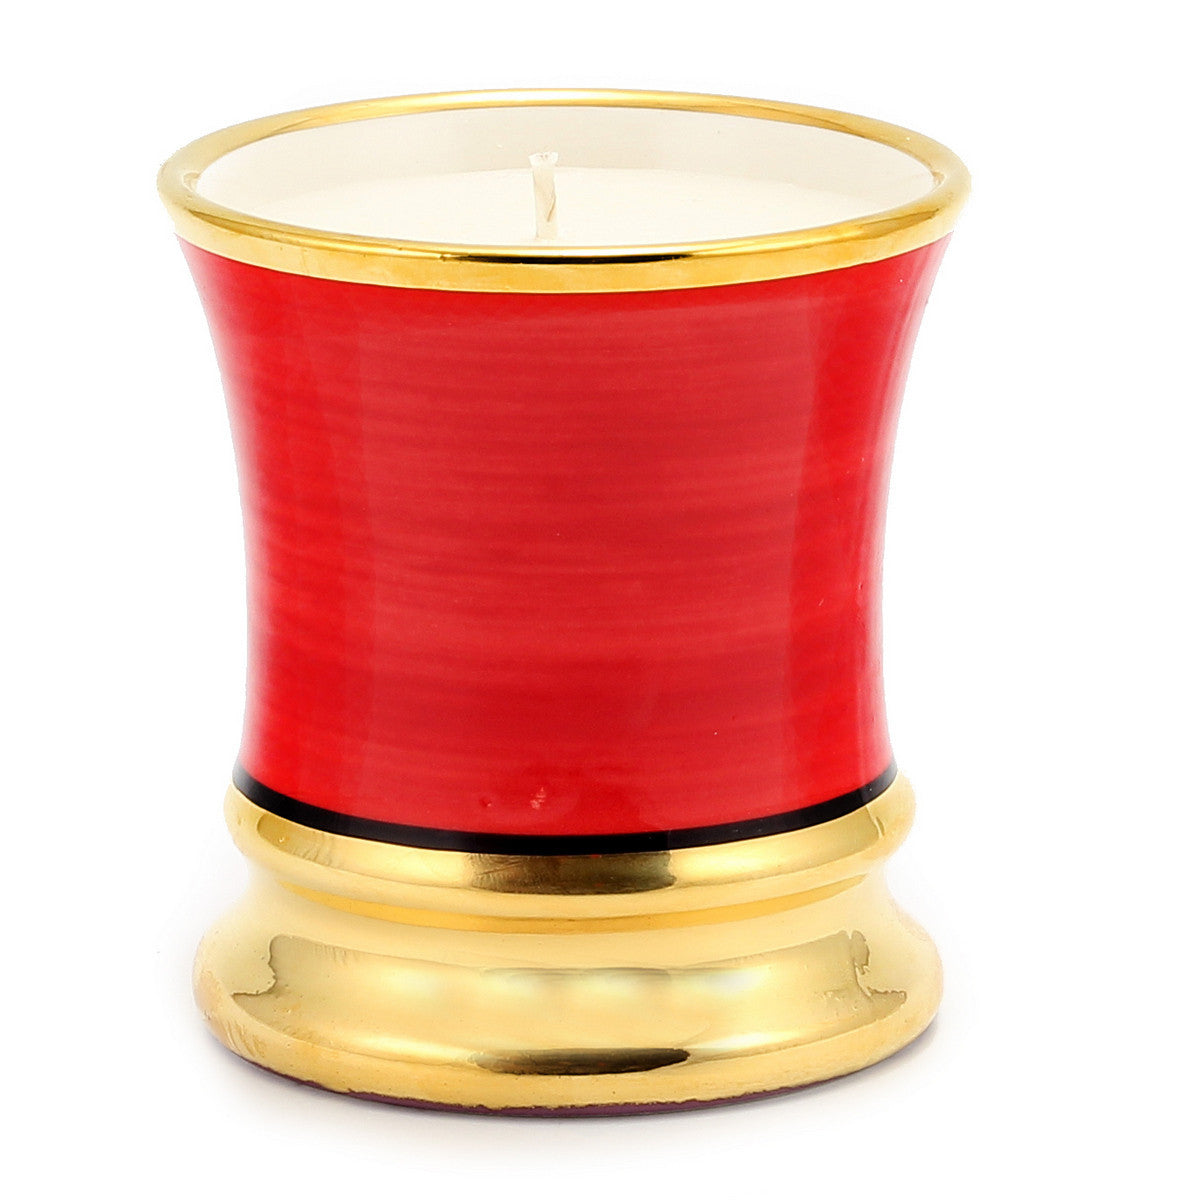 ROMANTICA: Deluxe Precious Cup Candle ~ Coloris Rosso Design ~ Pure Gold Rim - Artistica.com